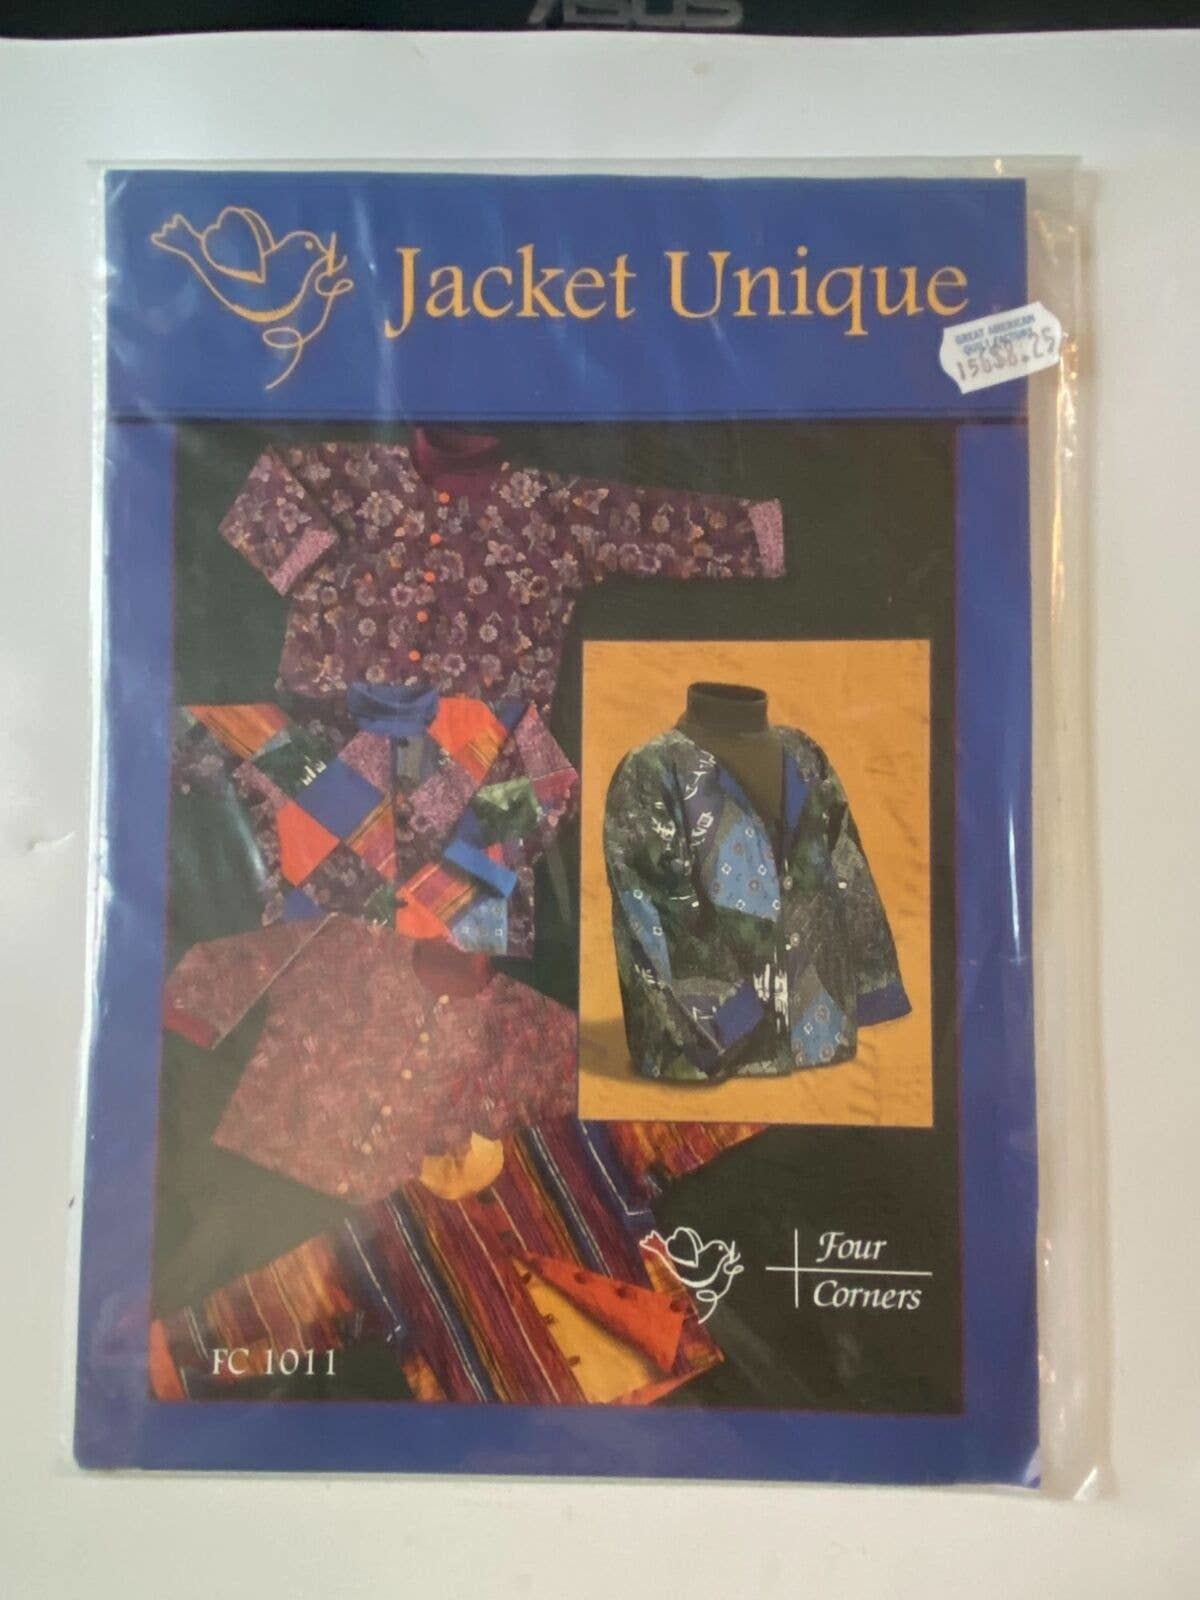 Four Corners FC1011 Jacket Unique Vintage Sewing Craft Patchwork Reversible - $7.87